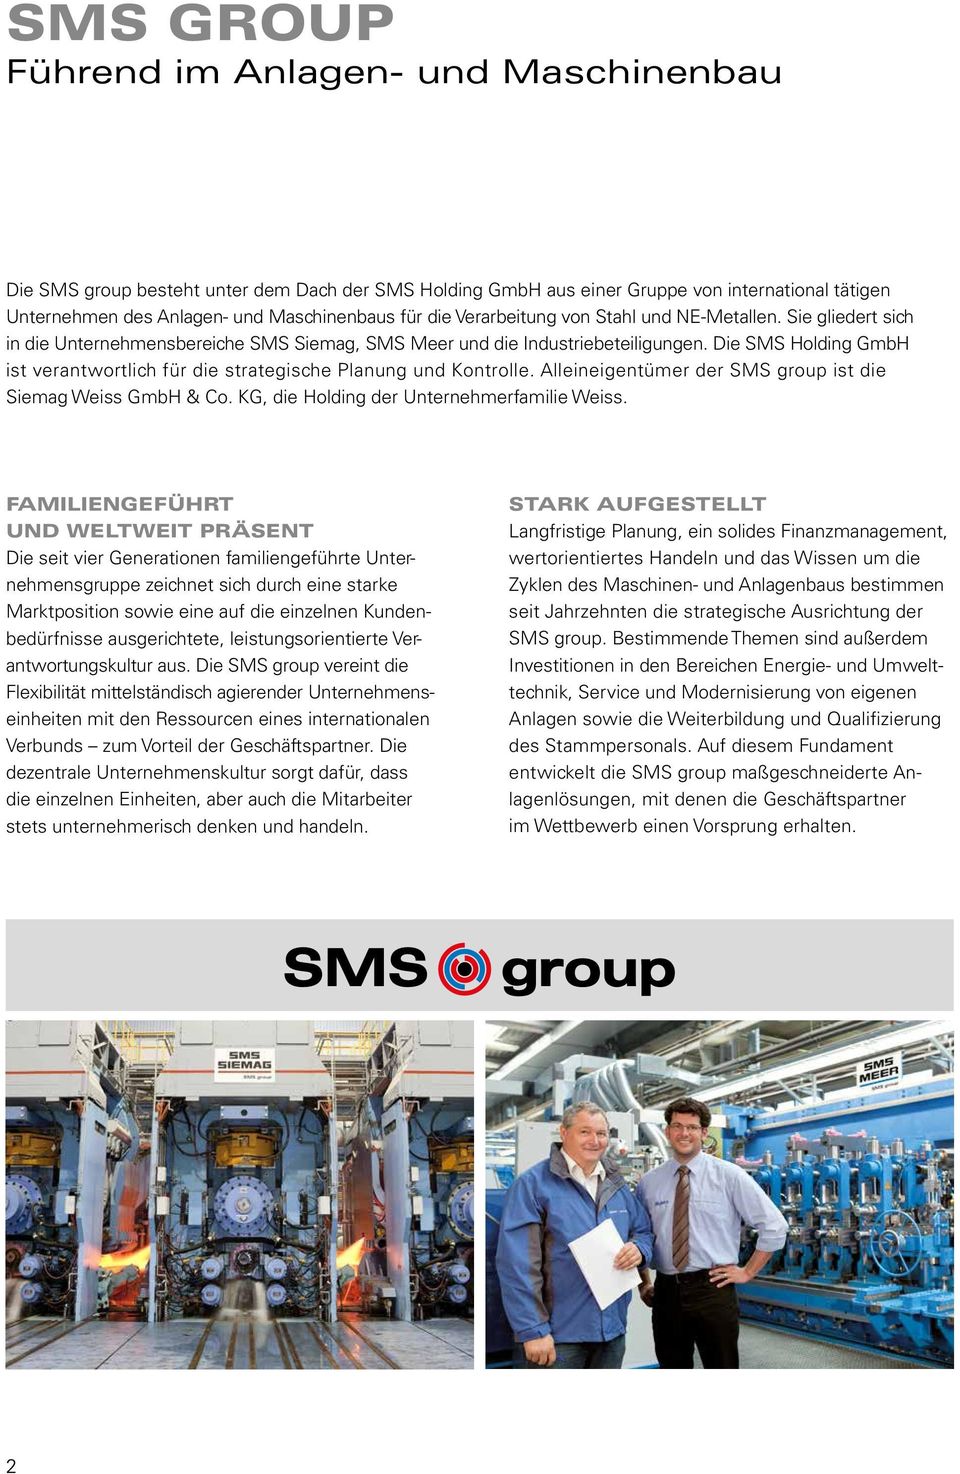 Die SMS Holding GmbH ist verantwortlich für die strategische Planung und Kontrolle. Alleineigentümer der SMS group ist die Siemag Weiss GmbH & Co. KG, die Holding der Unternehmerfamilie Weiss.